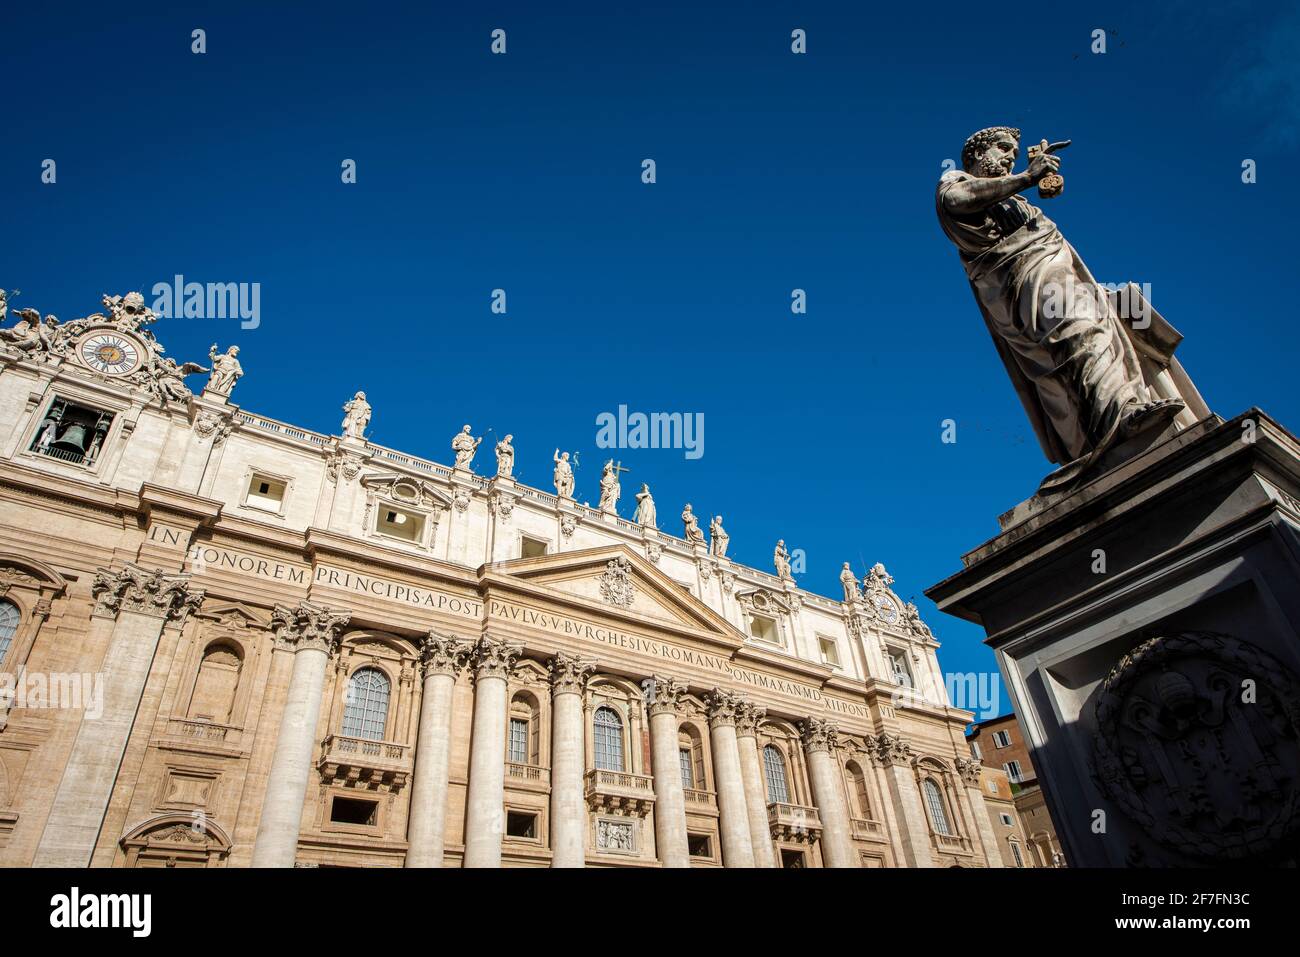 Statue de Saint-Pierre sur la place Saint-Pierre au Vatican, site classé au patrimoine mondial de l'UNESCO, Rome, Latium, Italie, Europe Banque D'Images